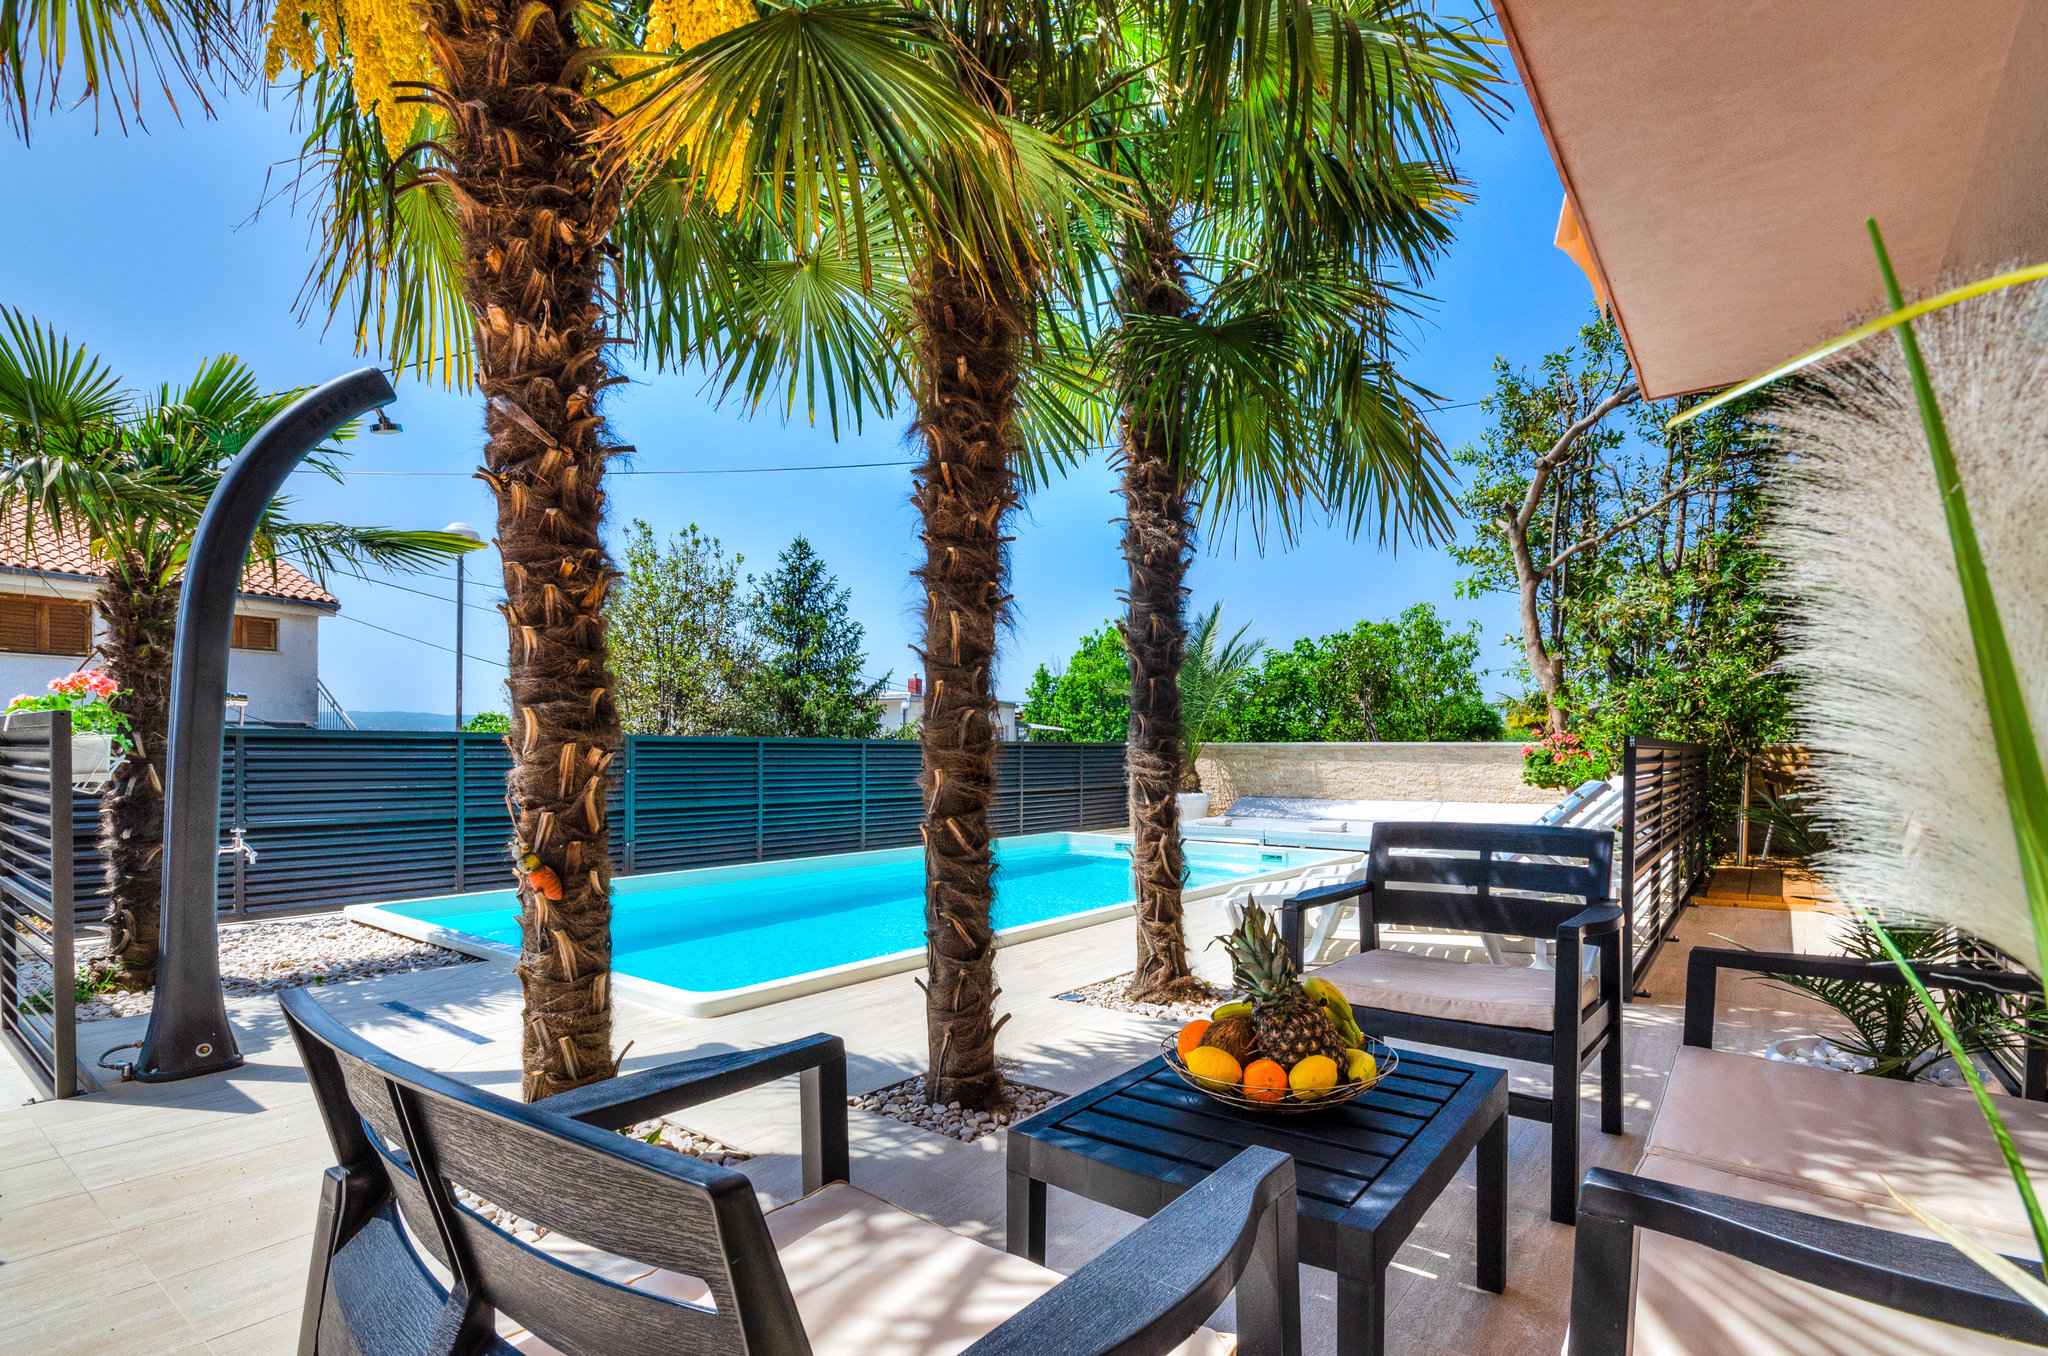 Ferienwohnung mit Pool, Klimaanlage und Grill  in Kroatien